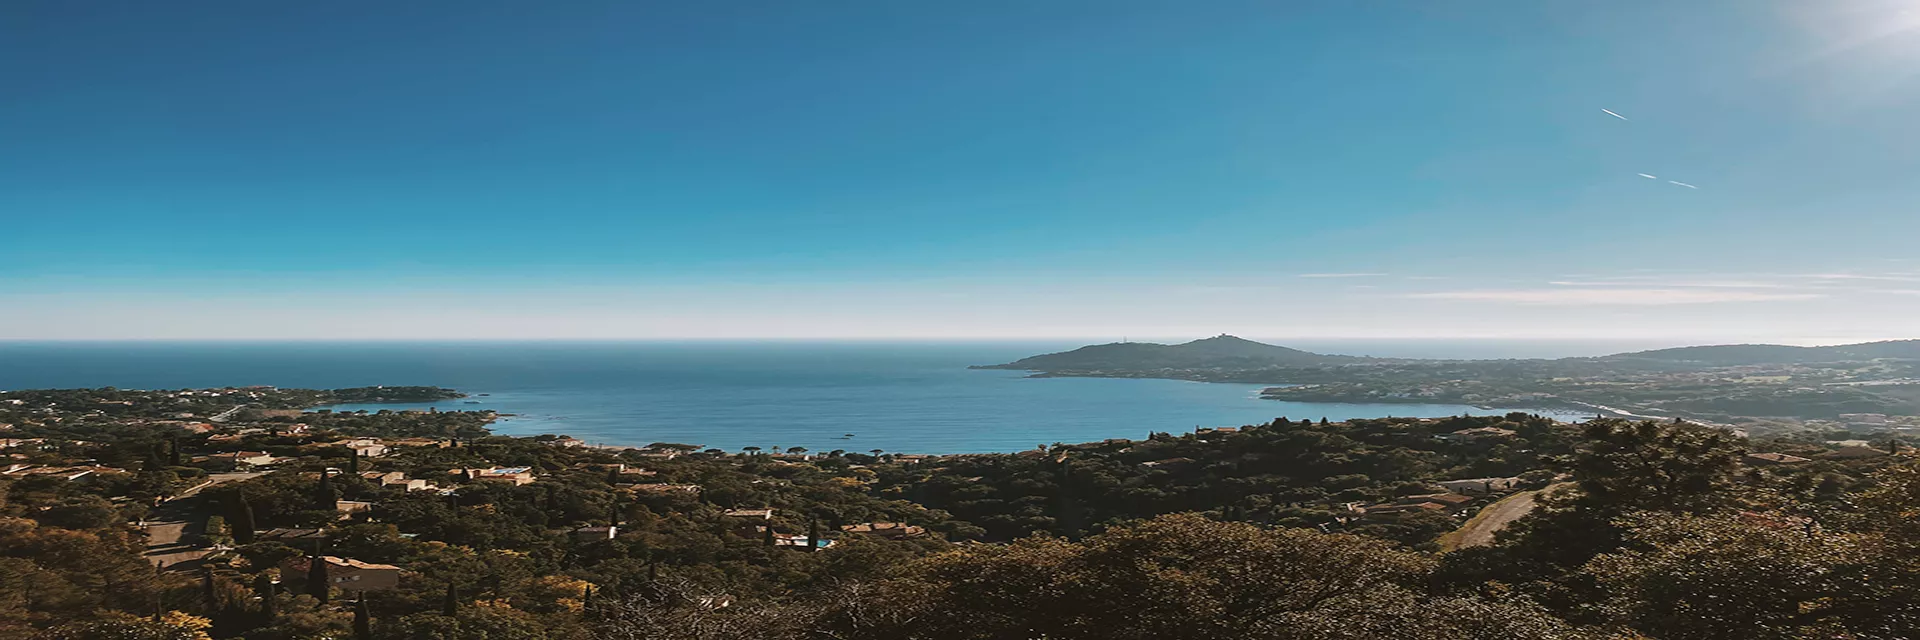 Les avantages de réserver une résidence de vacances sur la Côte d'Azur